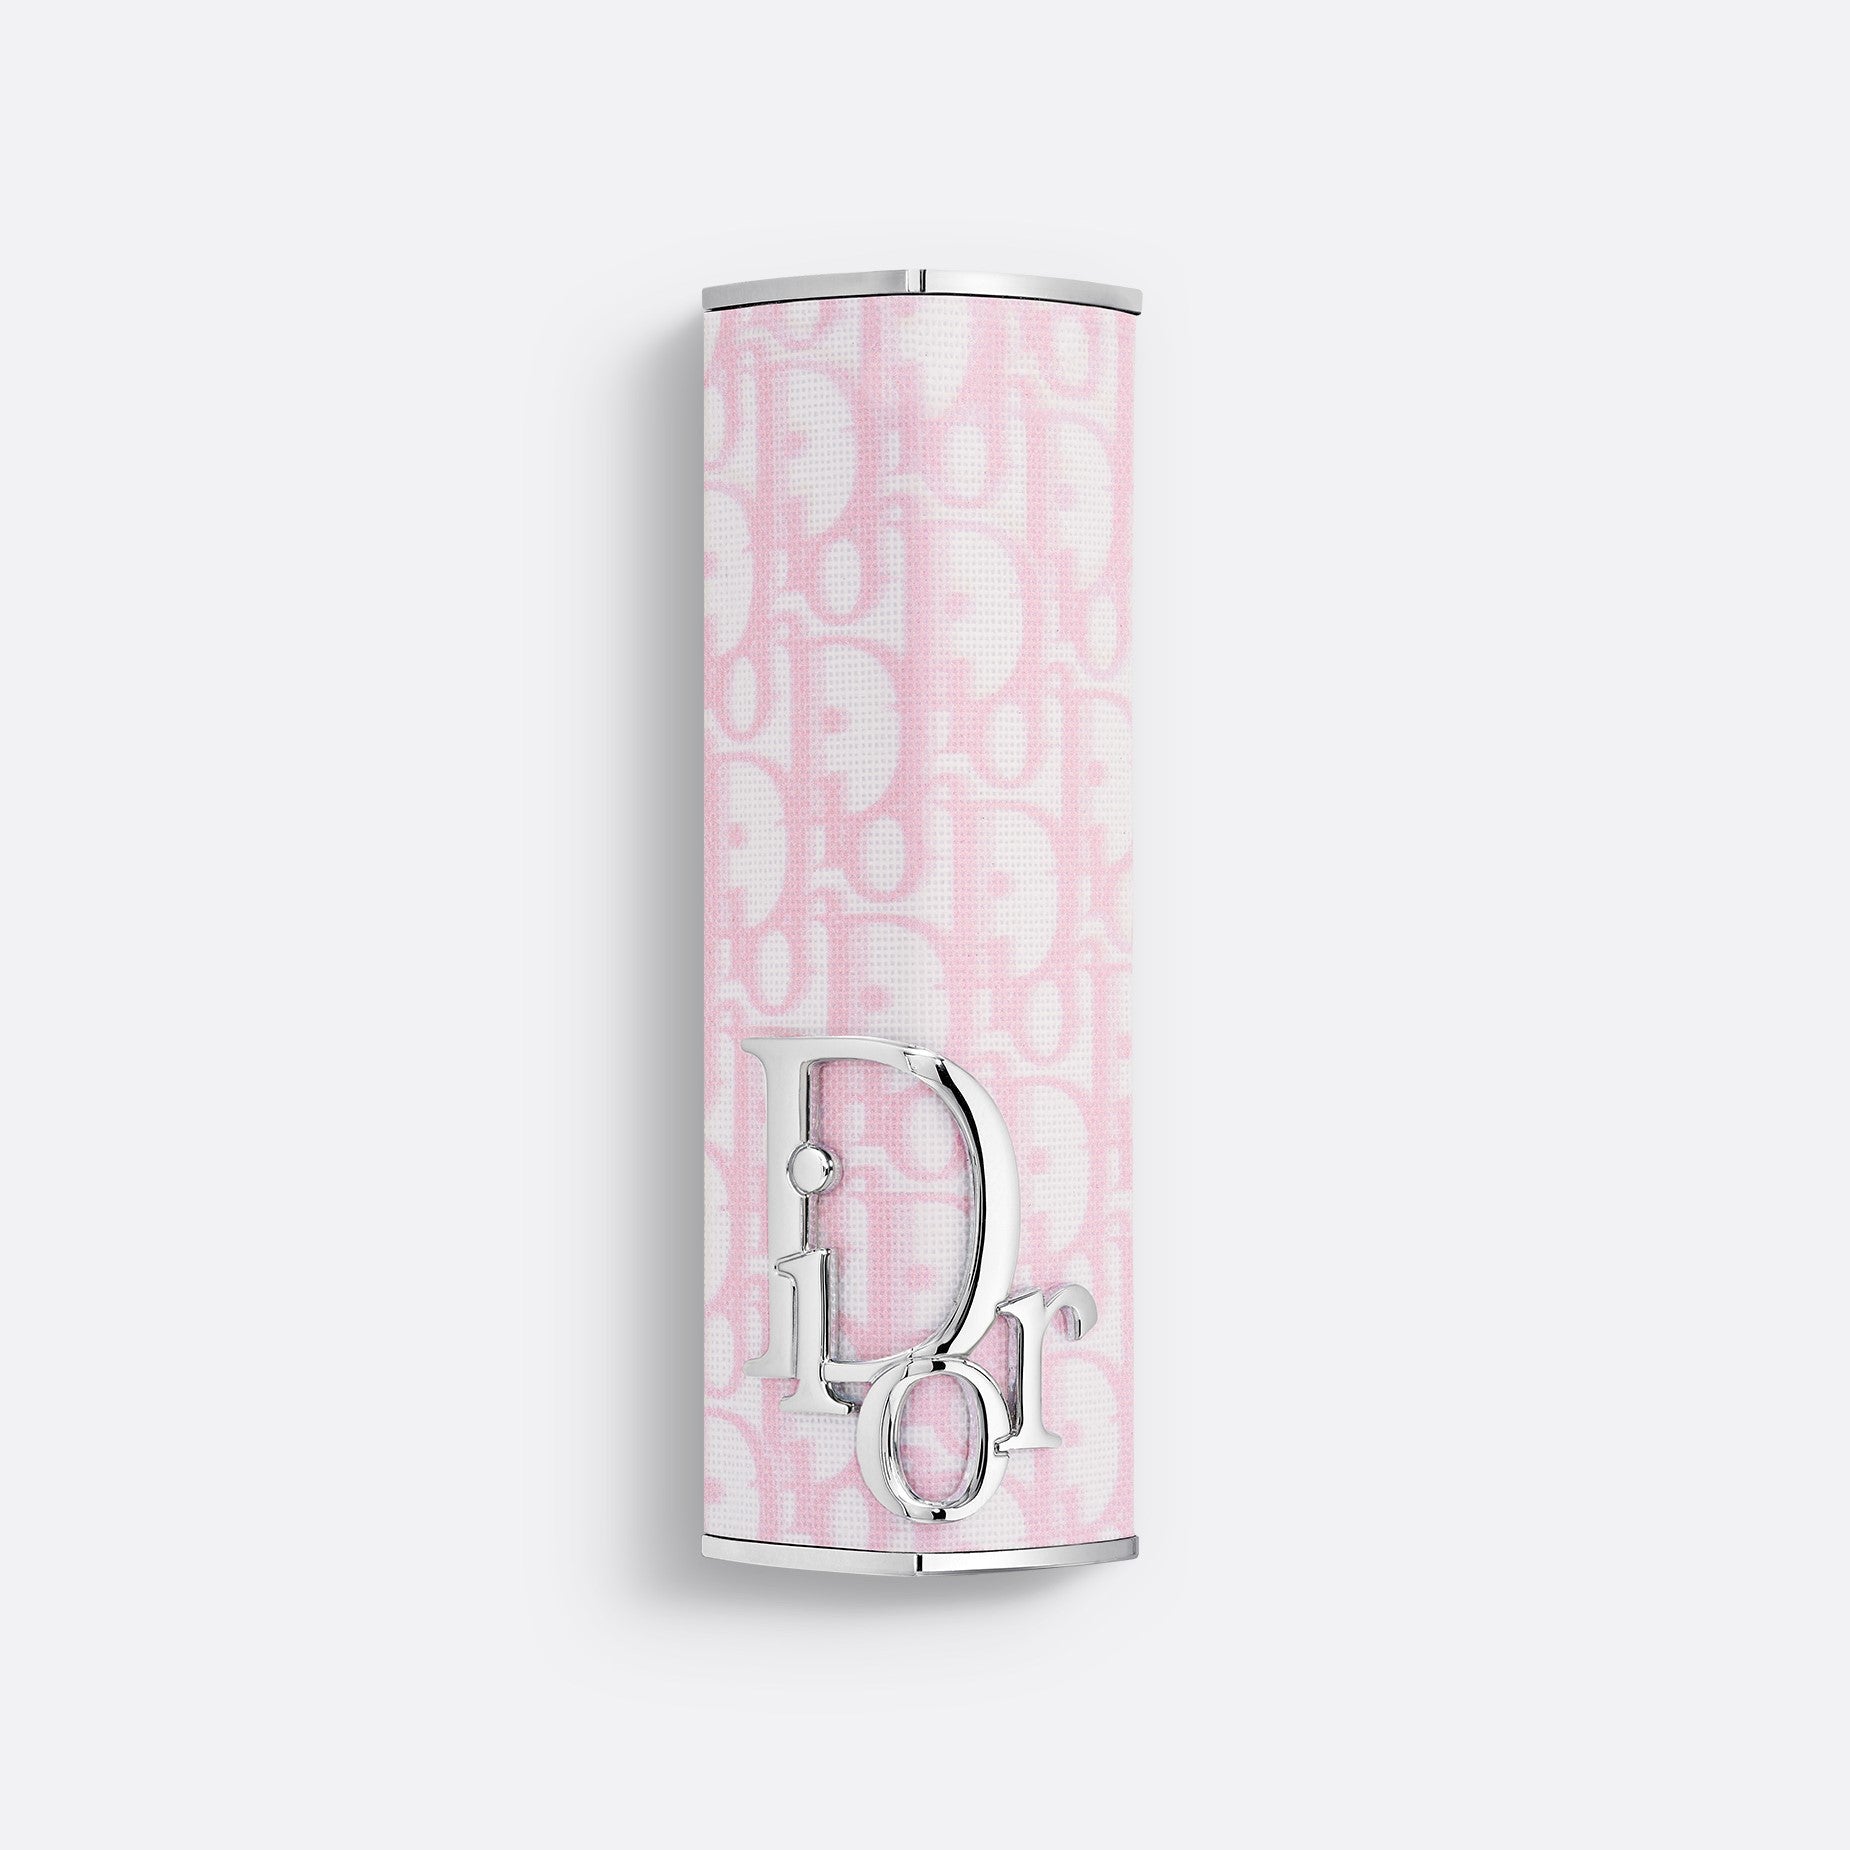 DIOR ADDICT CASE | Shine Lipstick Couture Case - Refillable - Limited Edition